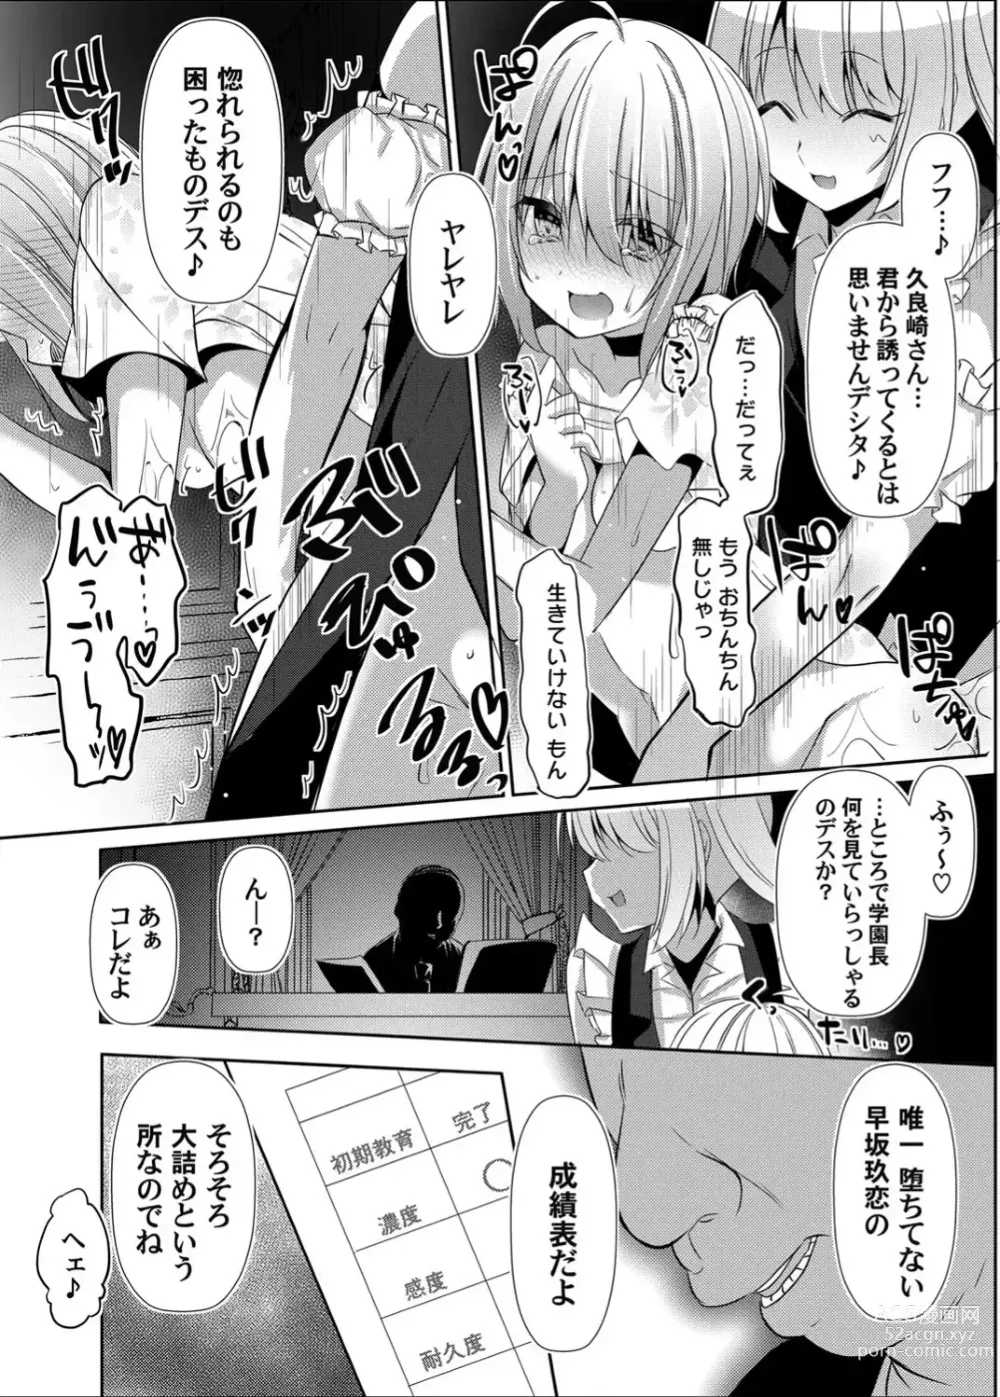 Page 57 of doujinshi Botsuraku Lady no Hakoniwa Showtime